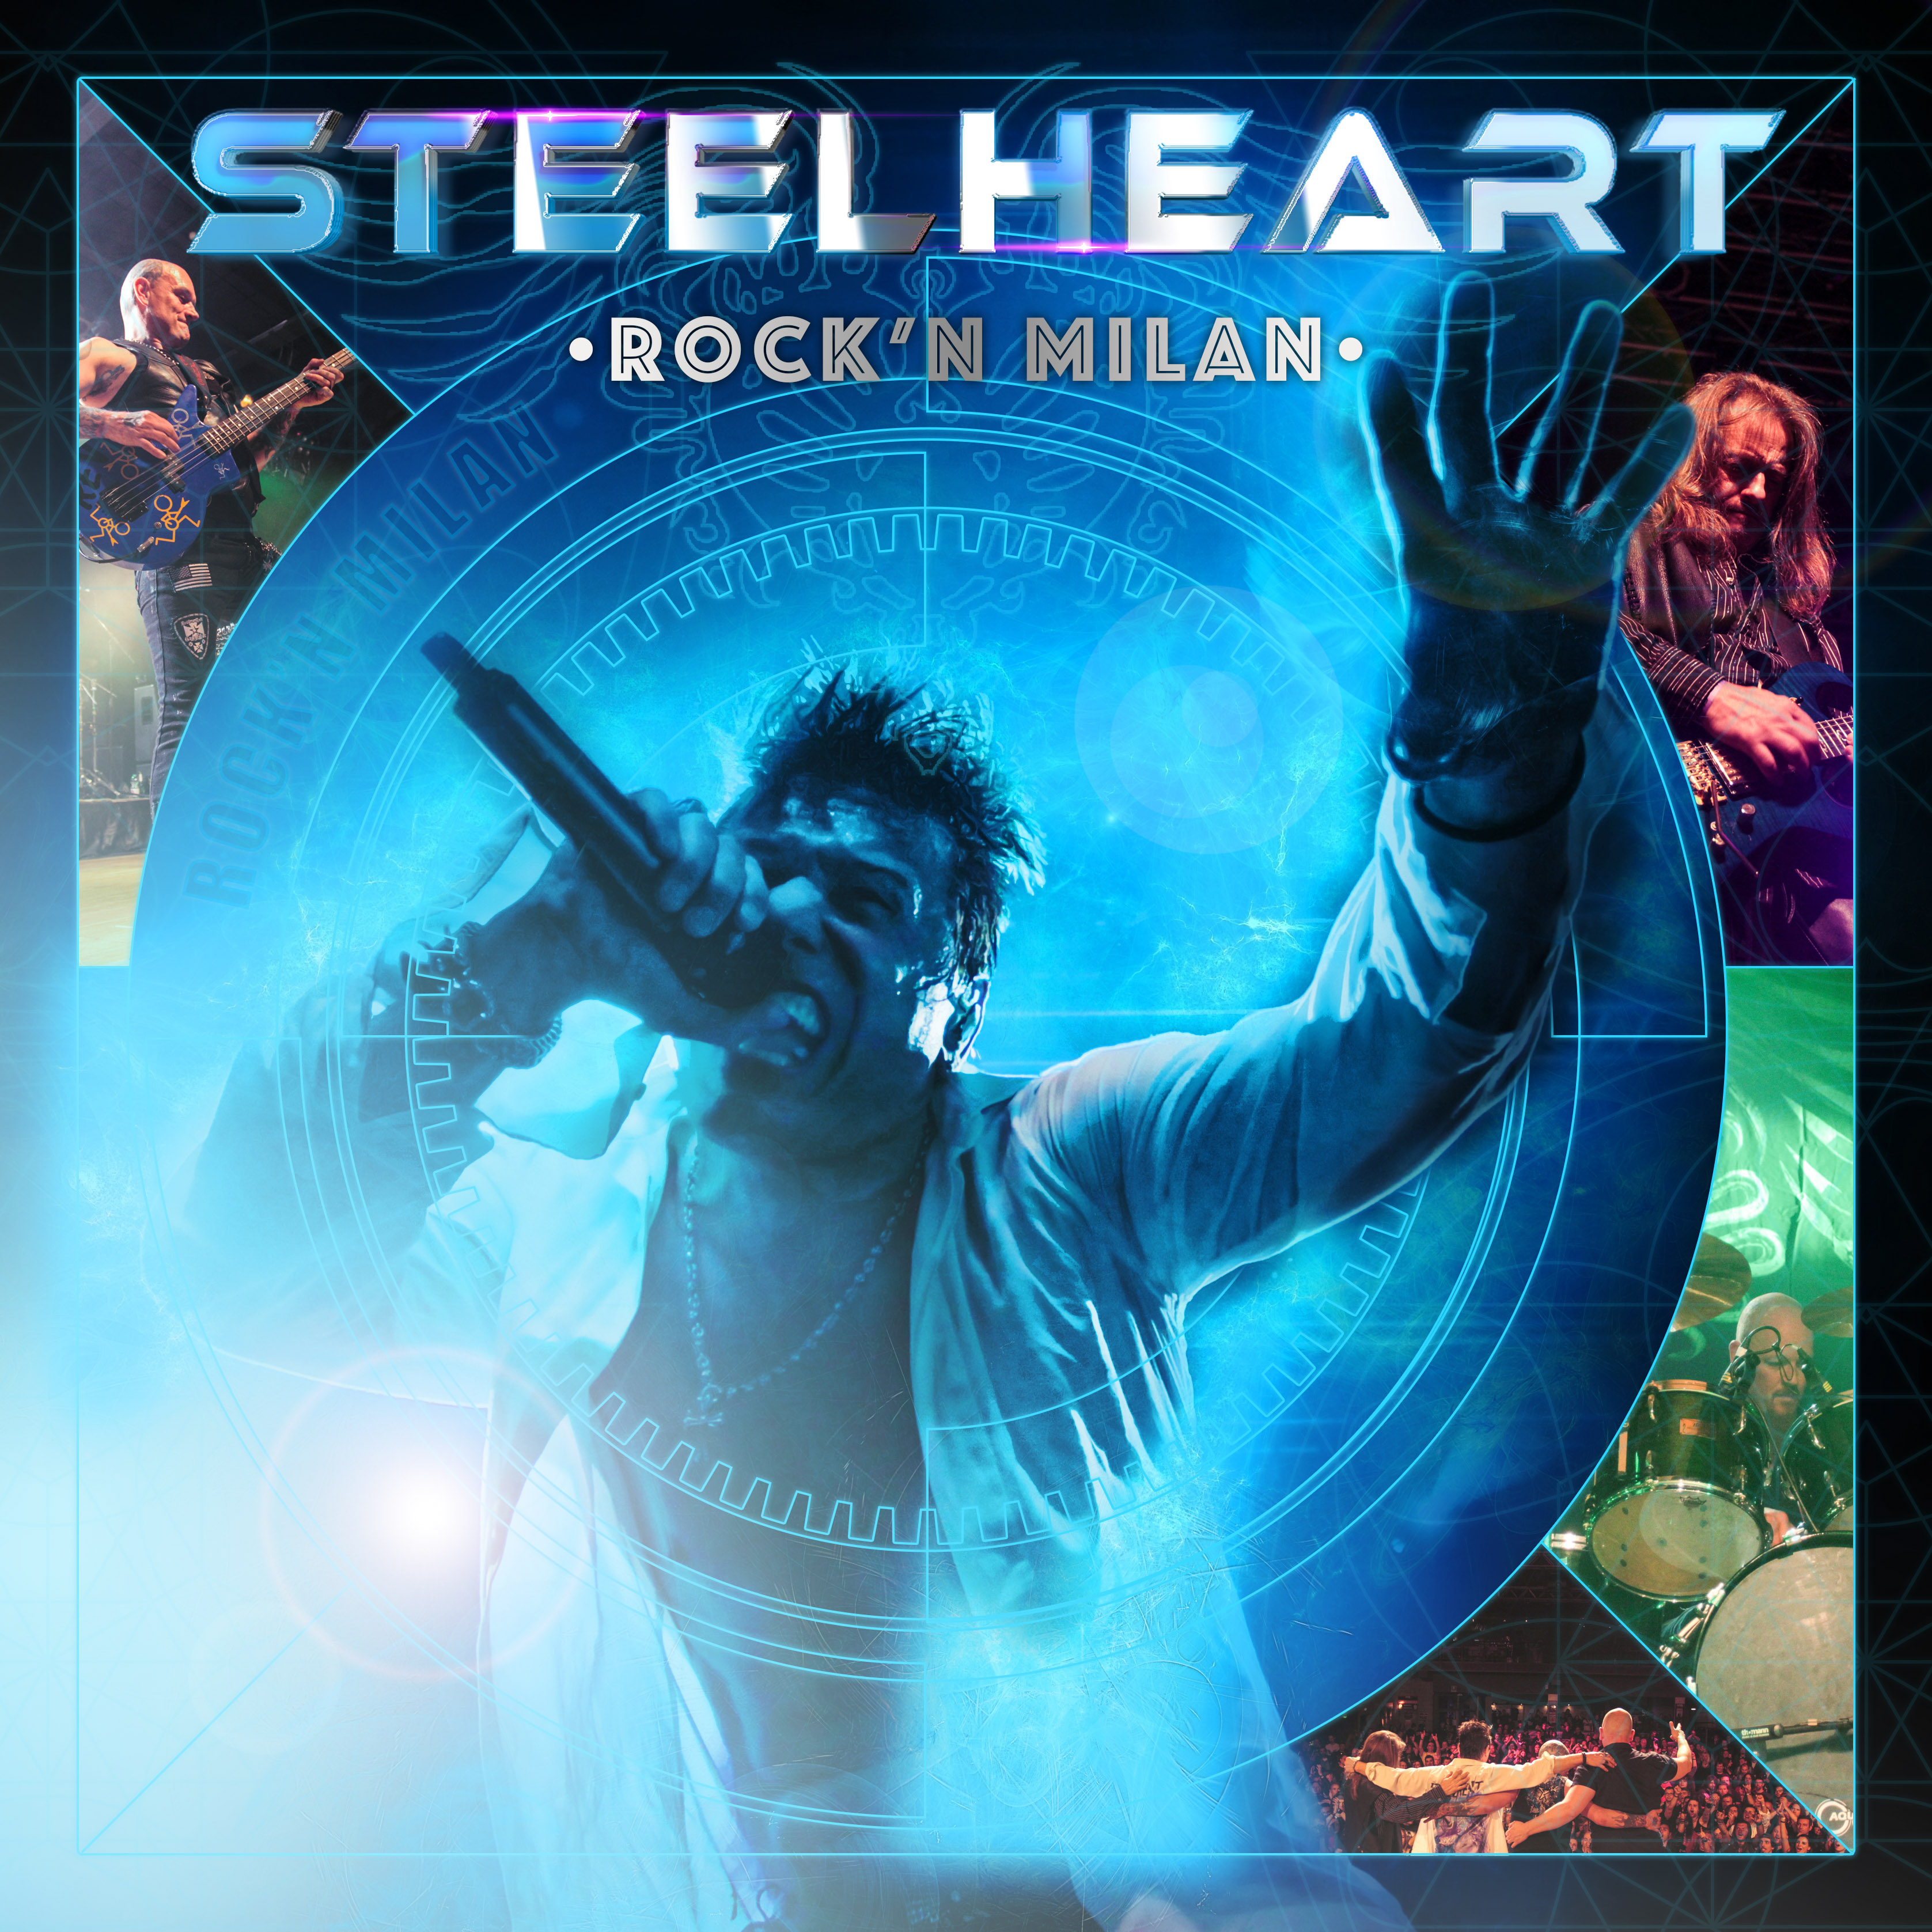 Steelheart - “Rock’n Milan”